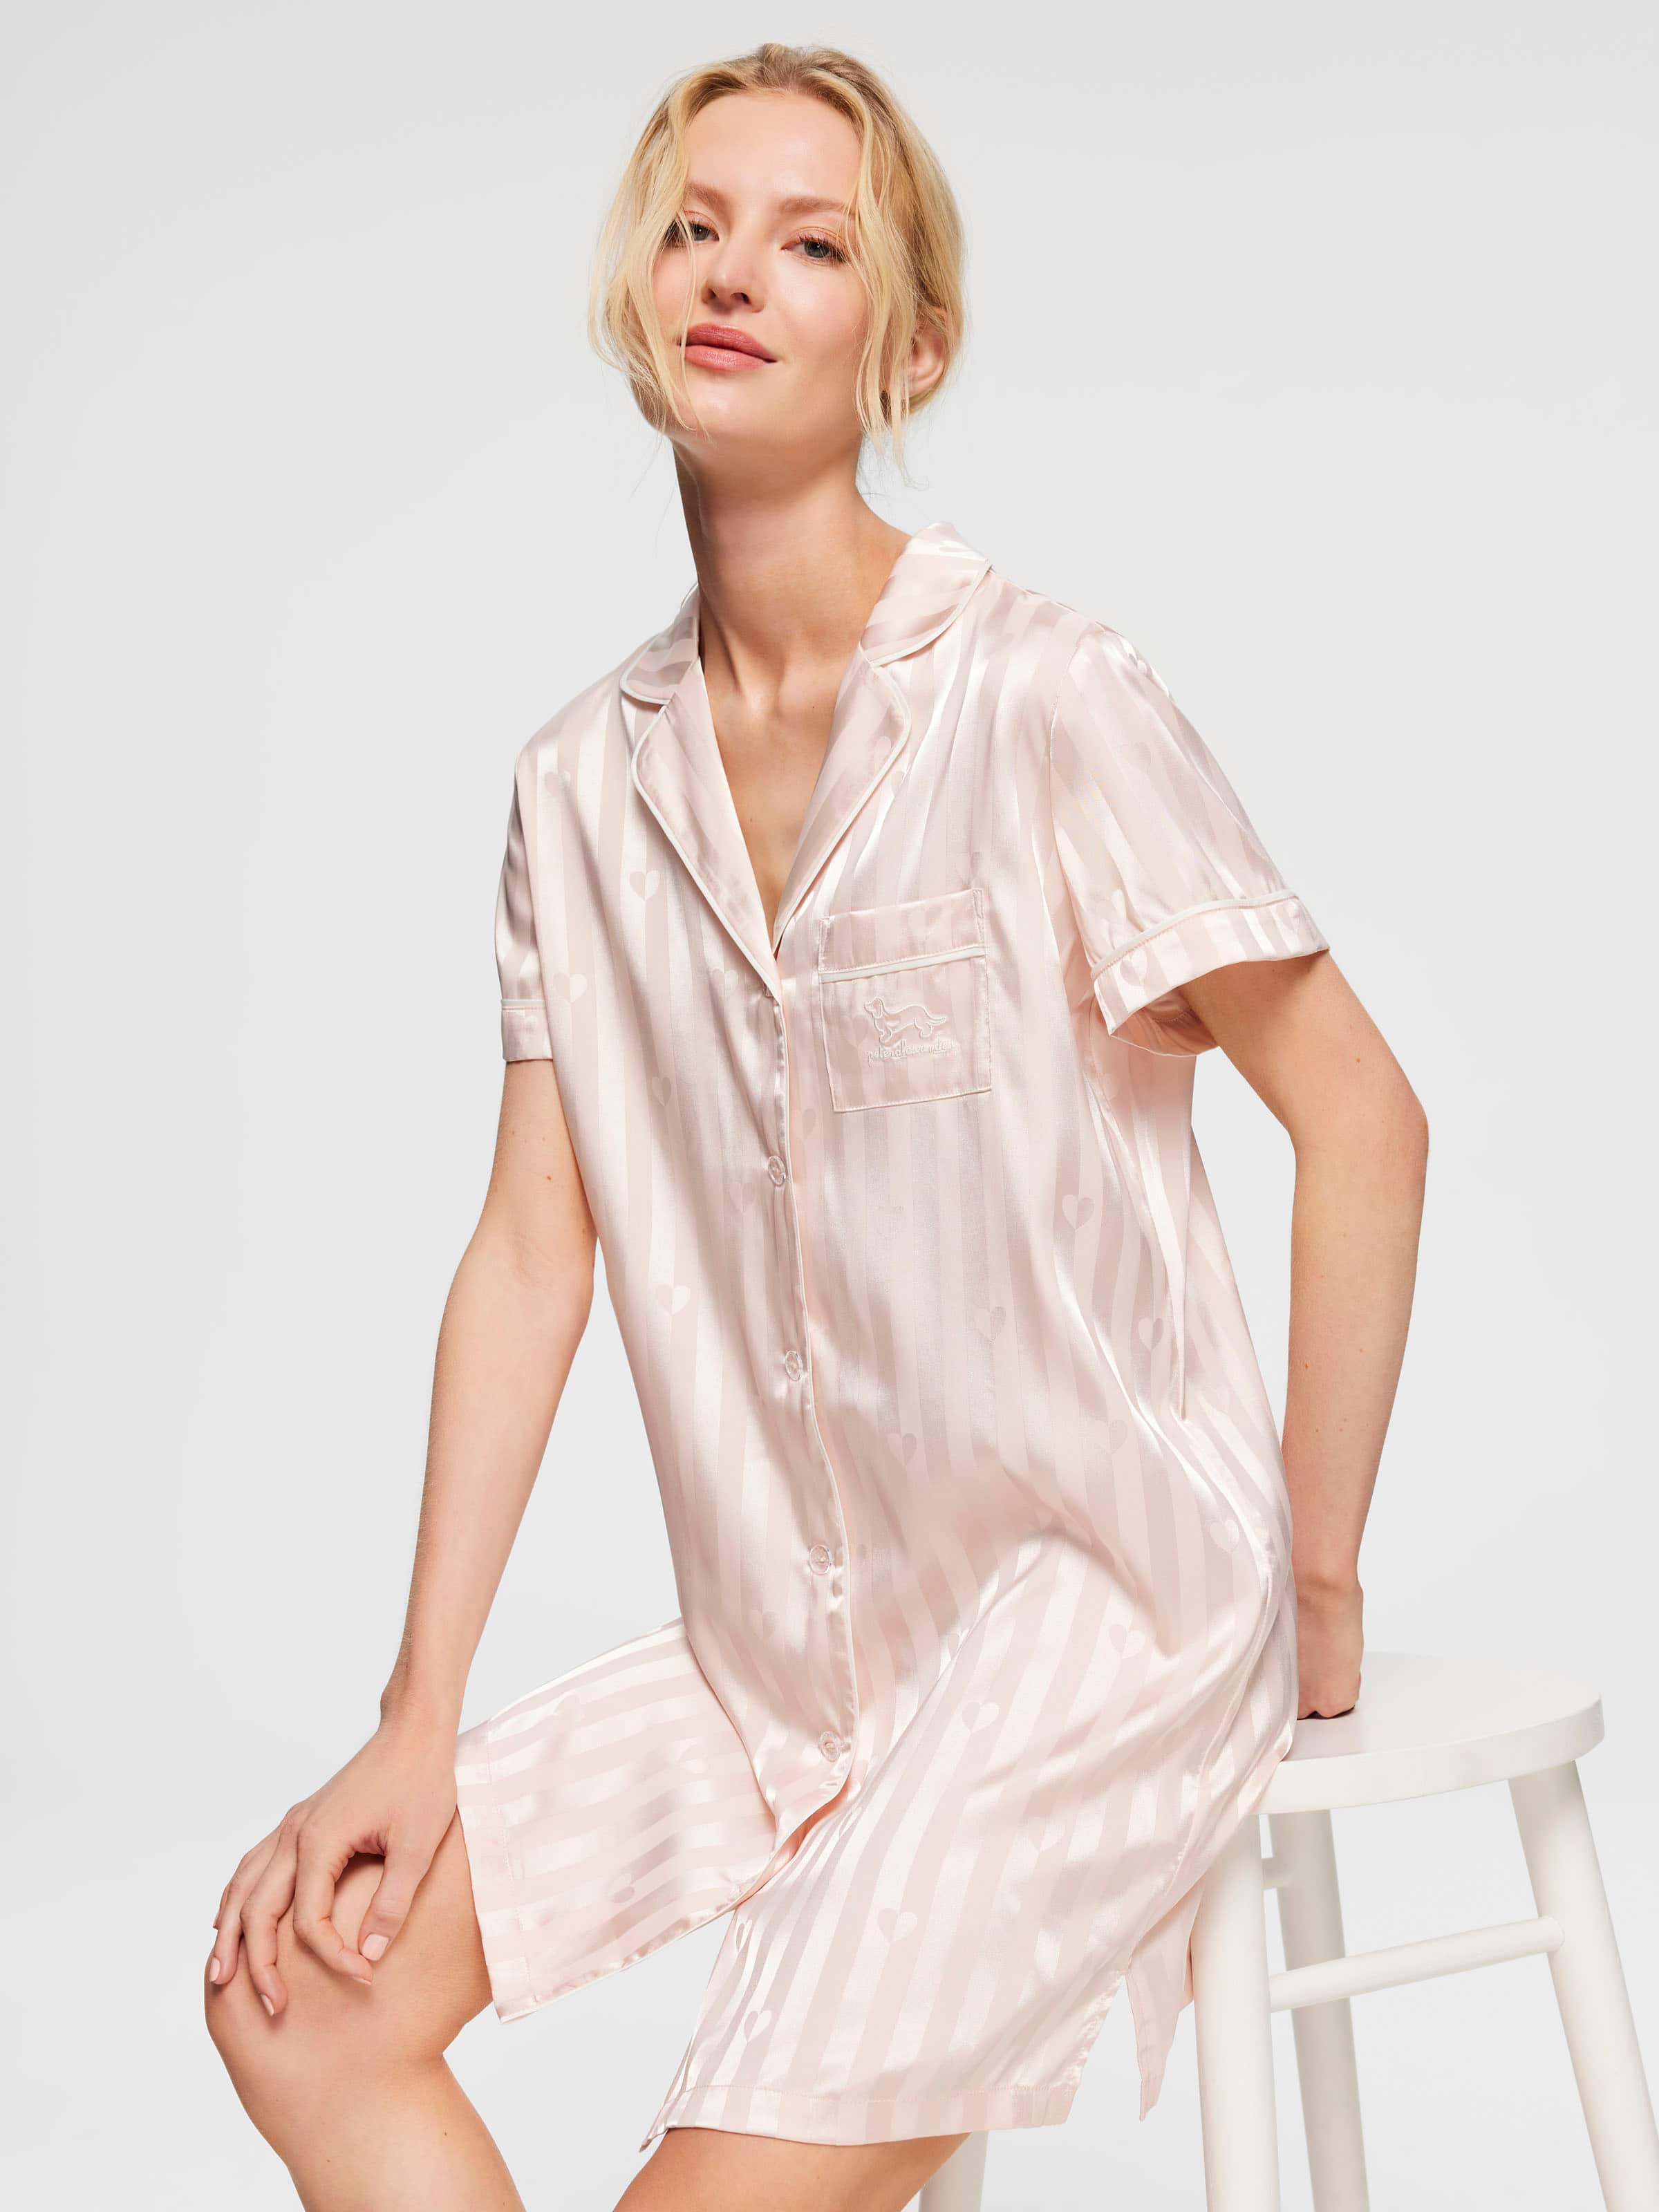 Satin Pyjamas - Satin PJs For Women